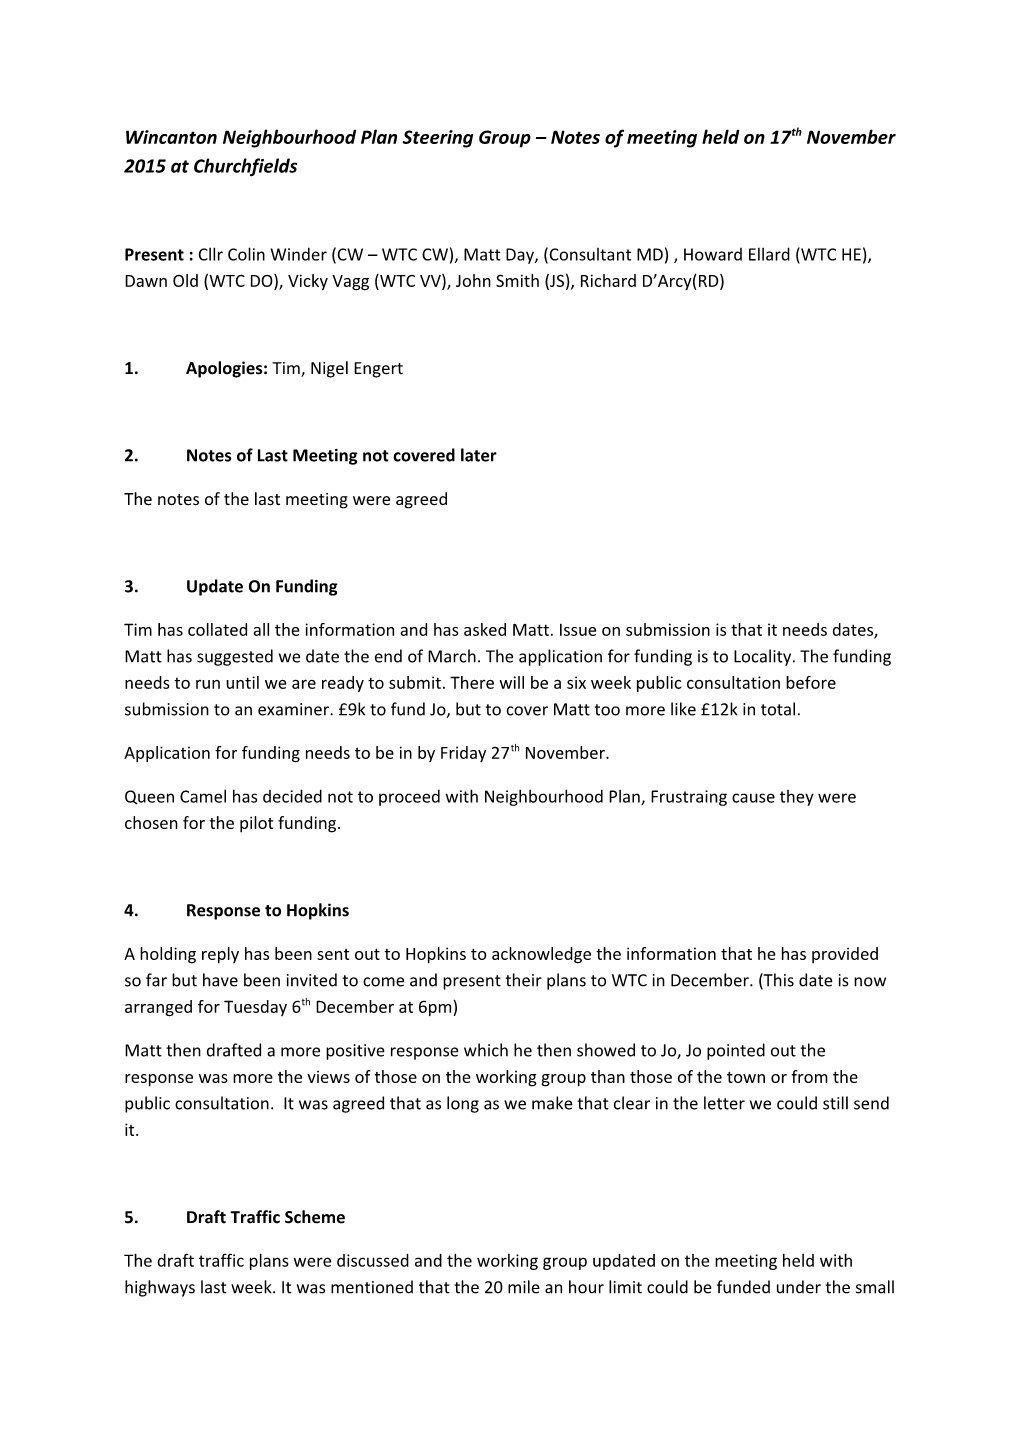 Wincanton Neighbourhood Plan Steering Group Notes of Meeting Held on 17Th November 2015